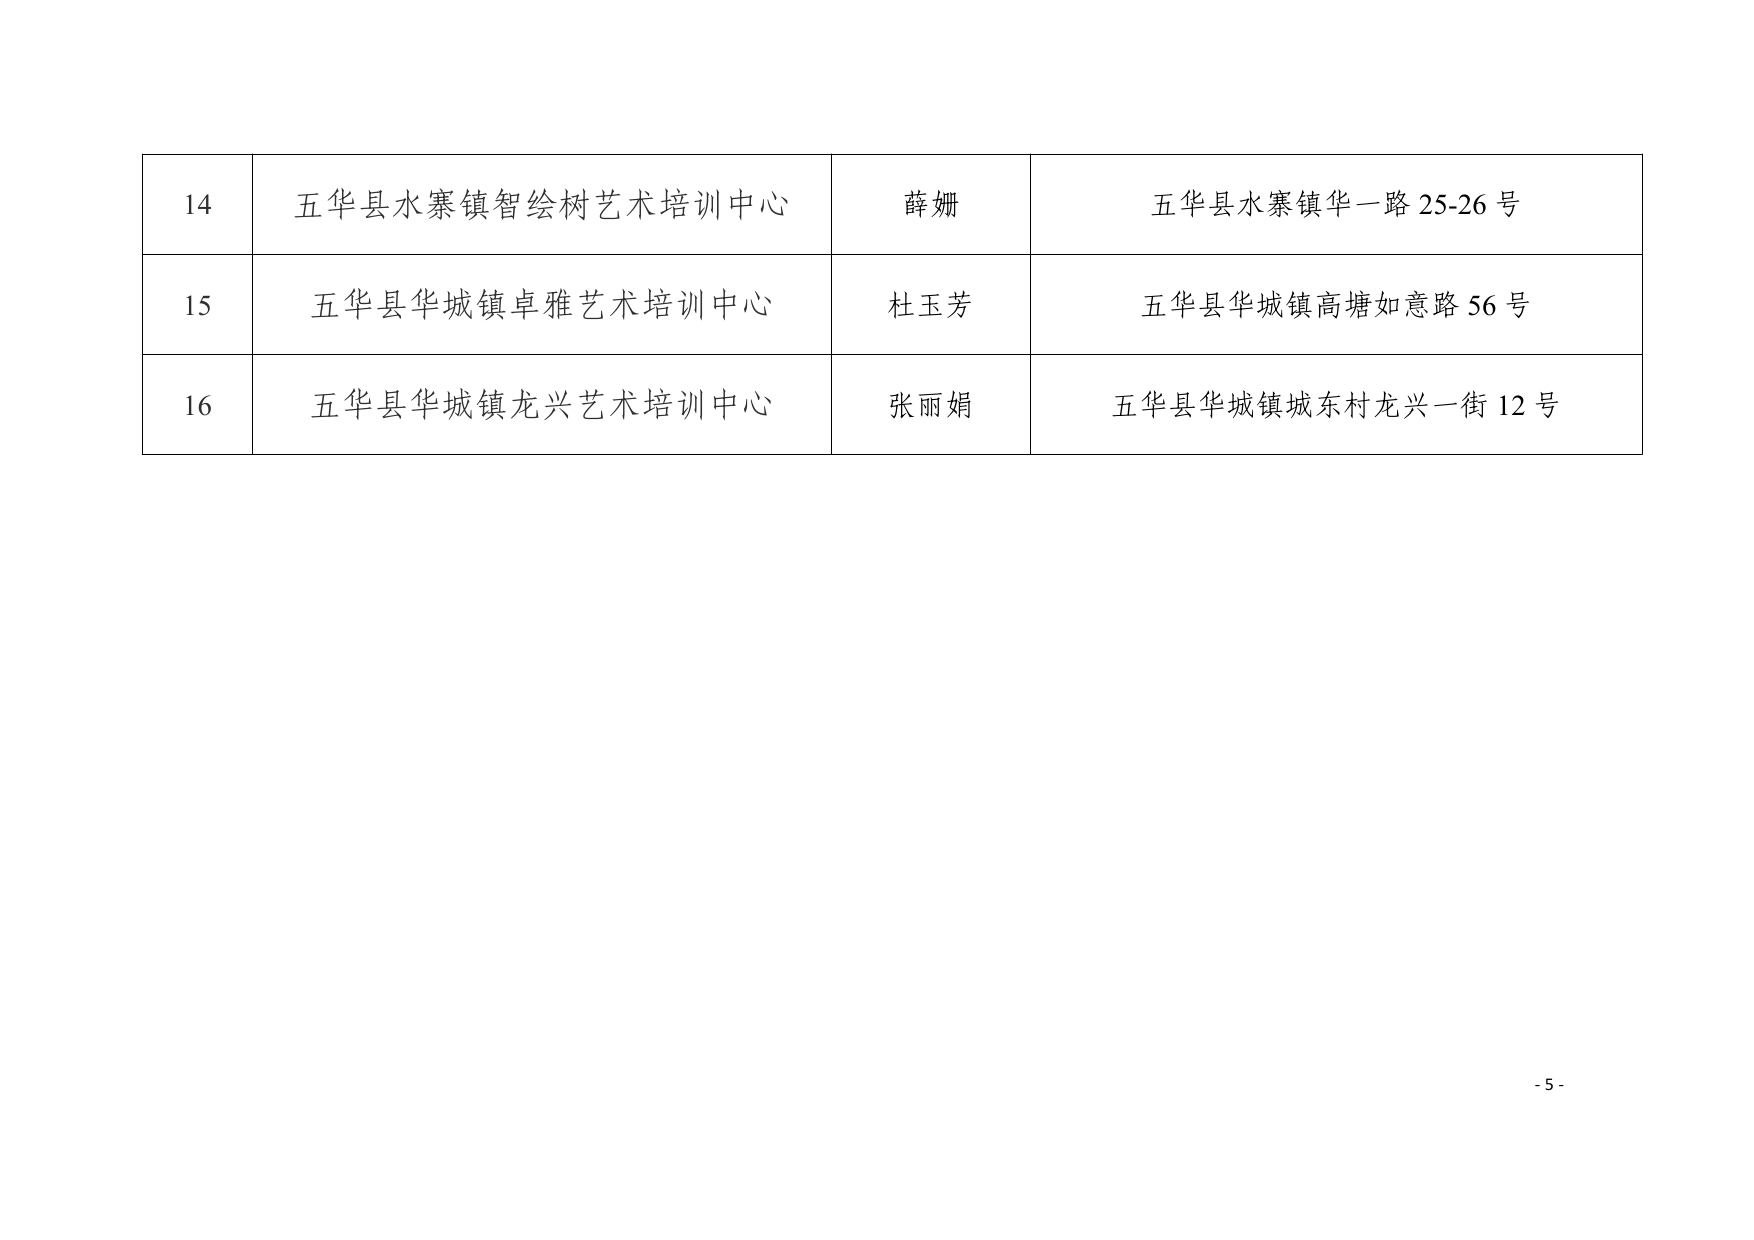 关于同意五华县水寨镇同诚教育培训有限公司等十六所校外培训机构设立的公示0004.jpg